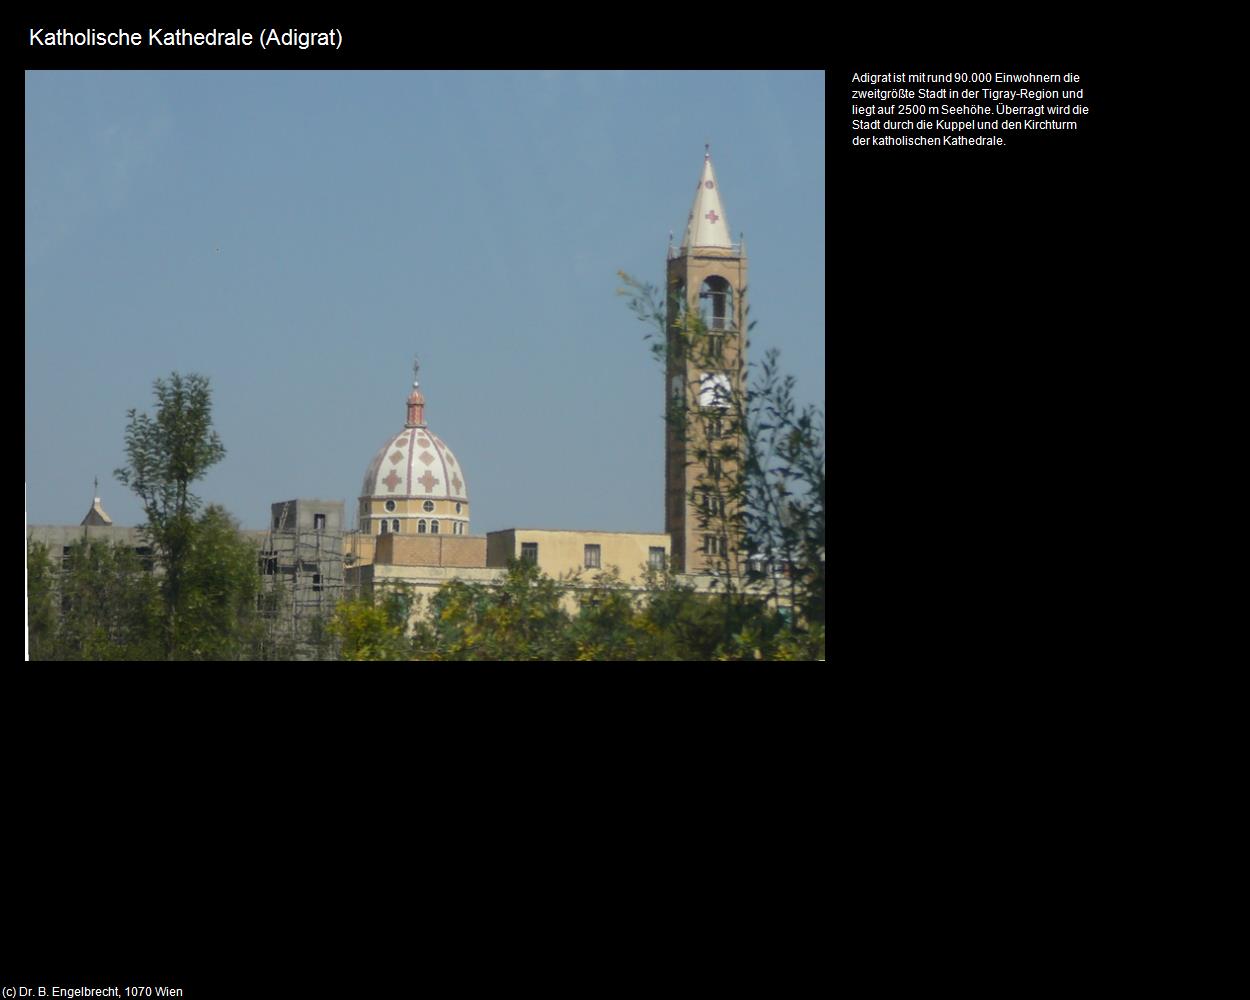 Katholische Kathedrale  (Adigrat) in Äthiopien